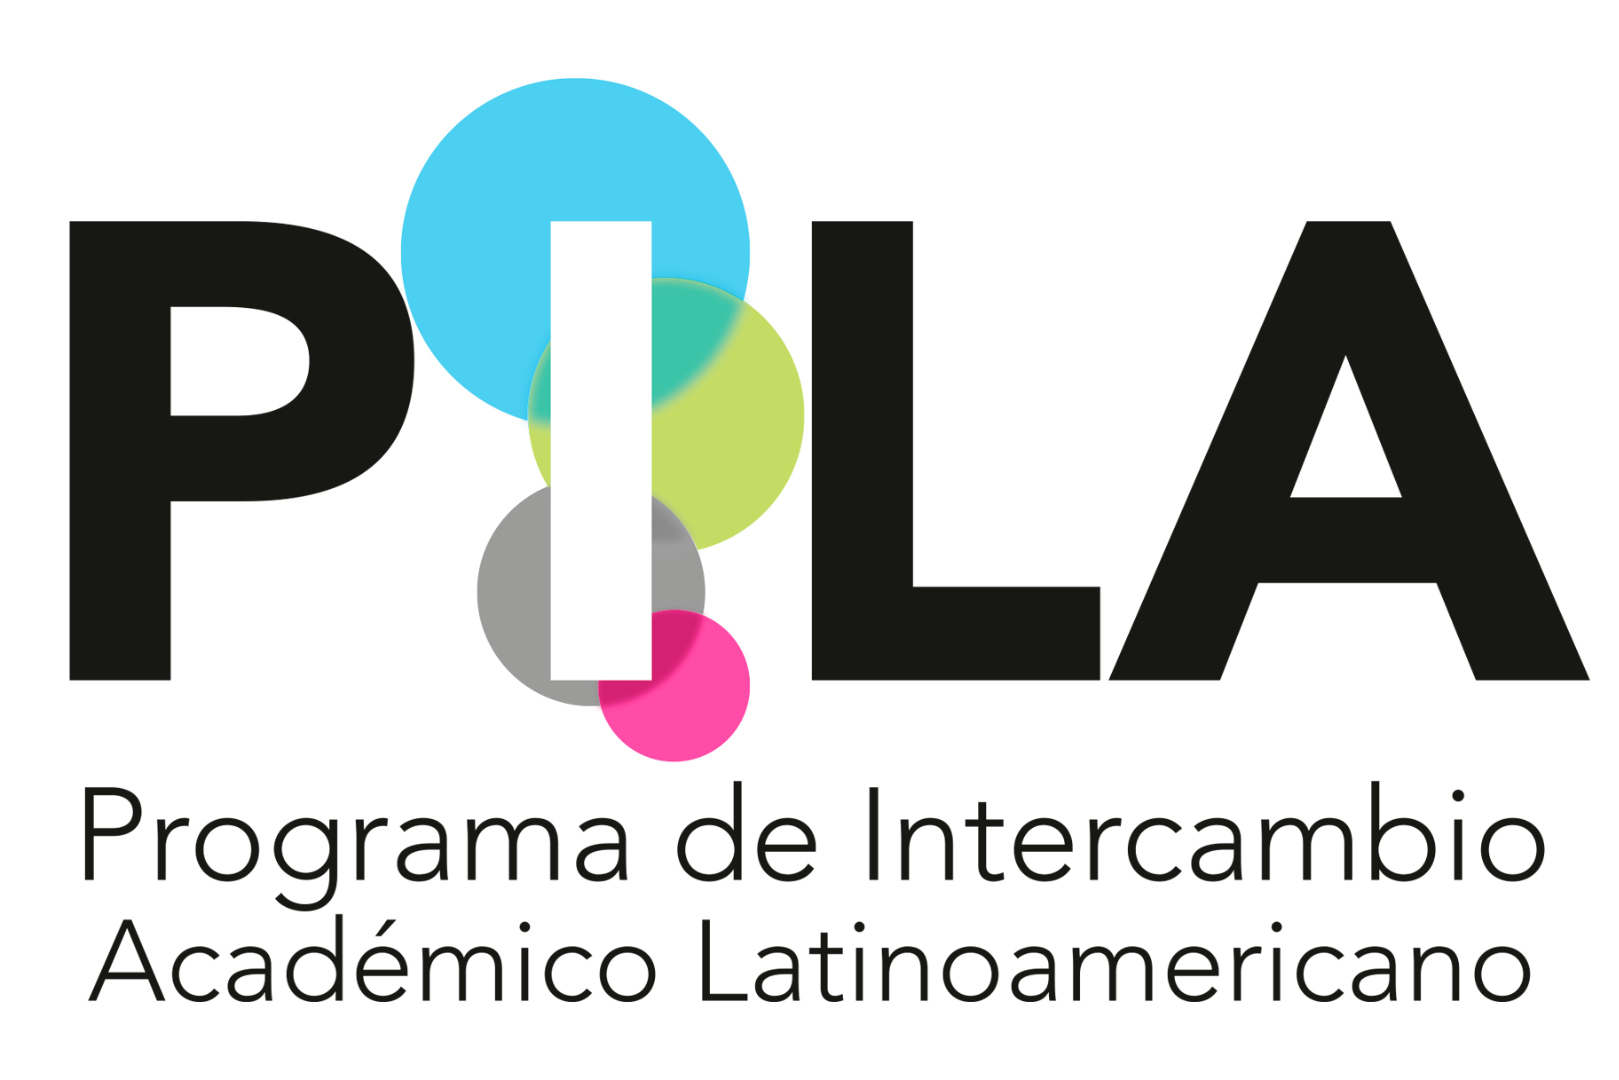 Arte com a marca do Programa de Intercâmbio Académico Latinoamericano (PILA)